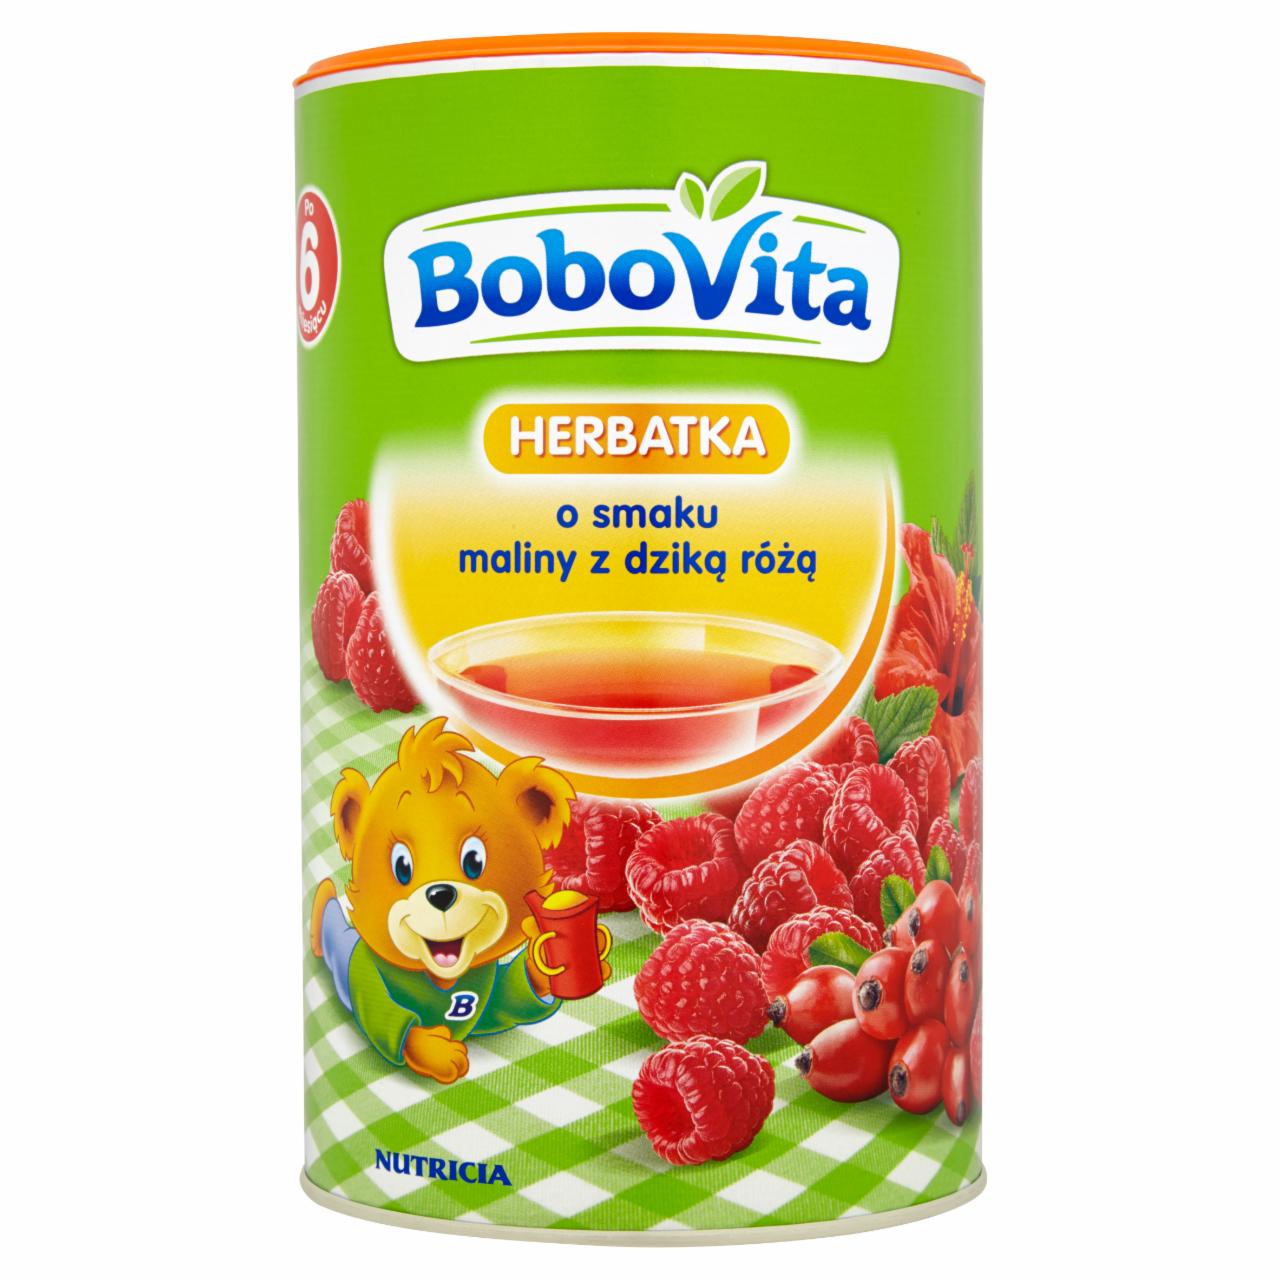 Zdjęcia - BoboVita Herbatka o smaku maliny z dziką różą po 6 miesiącu 400 g